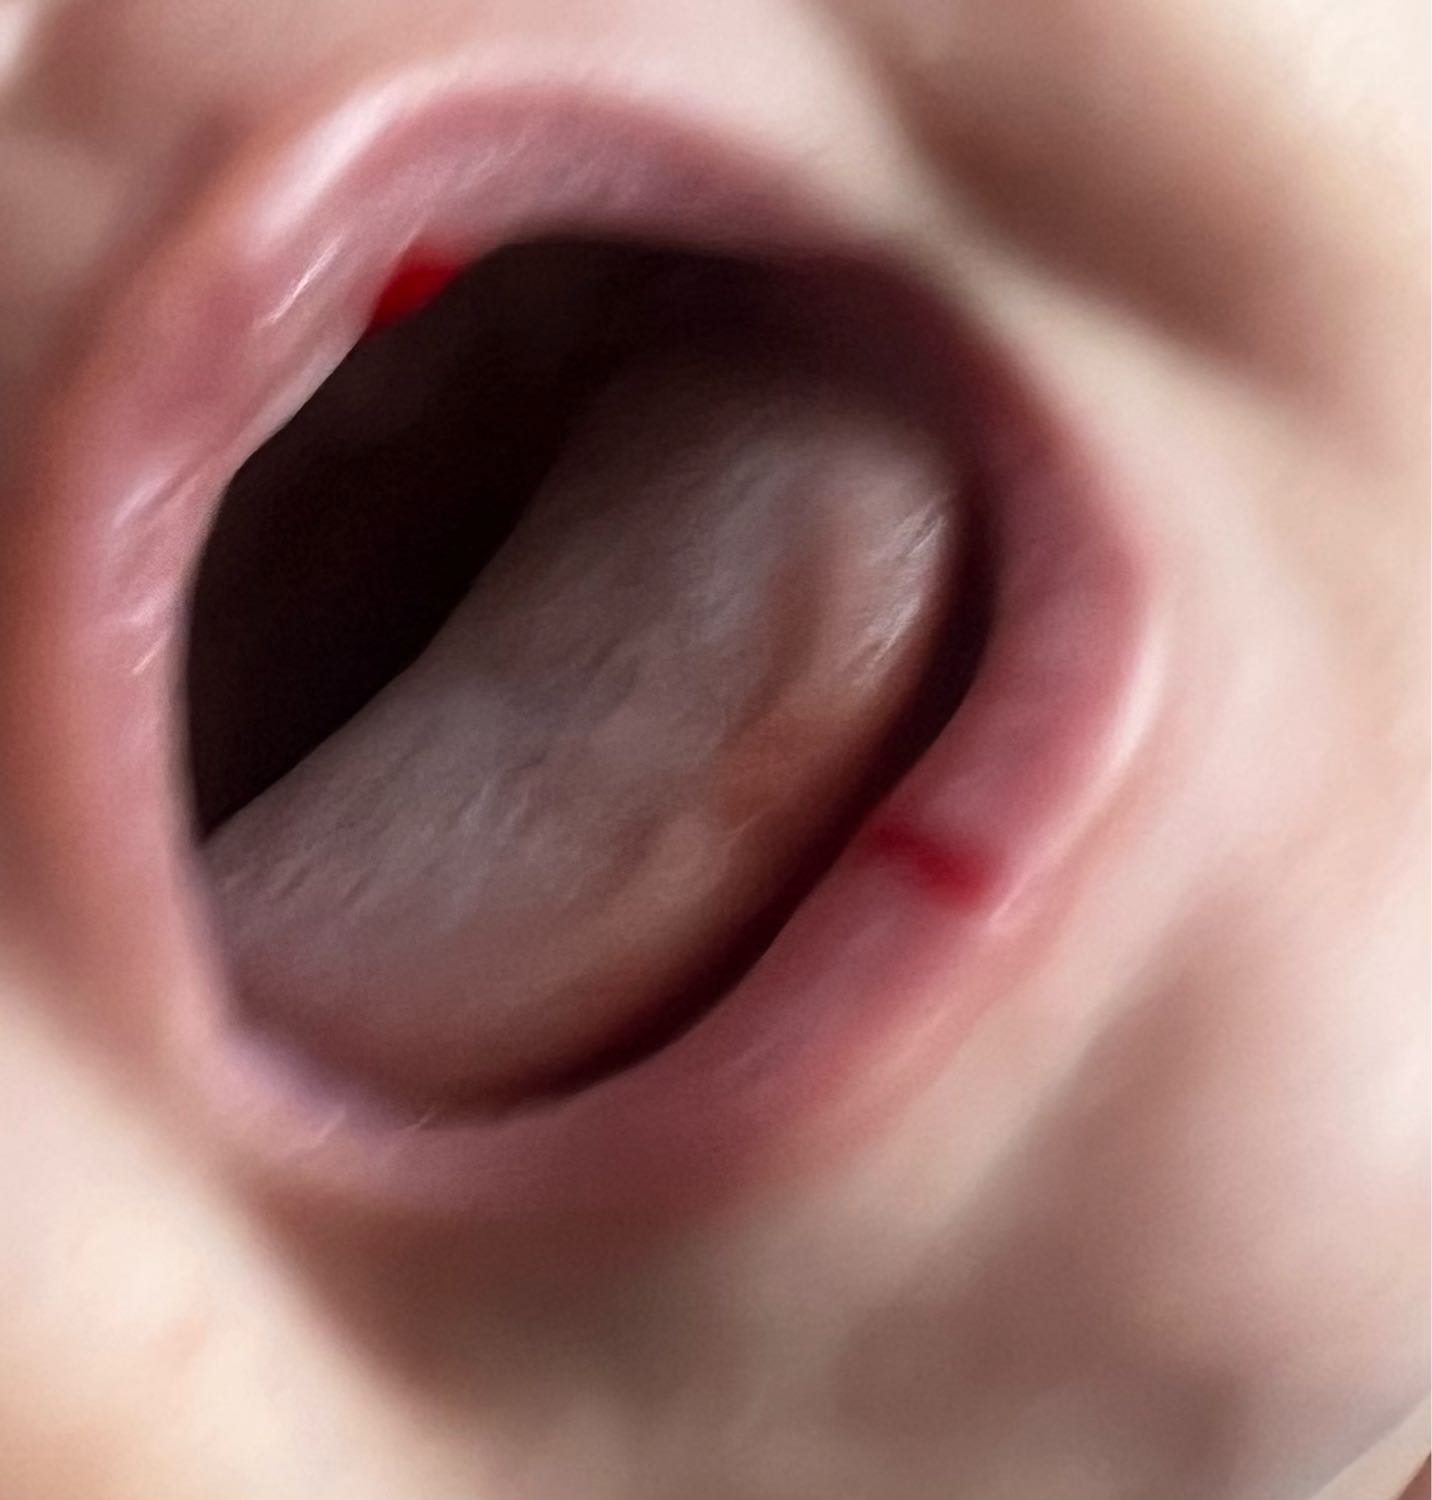 добрый день! у малыша кровоточат губы когда плачет(прикрепила фото)что... image №2